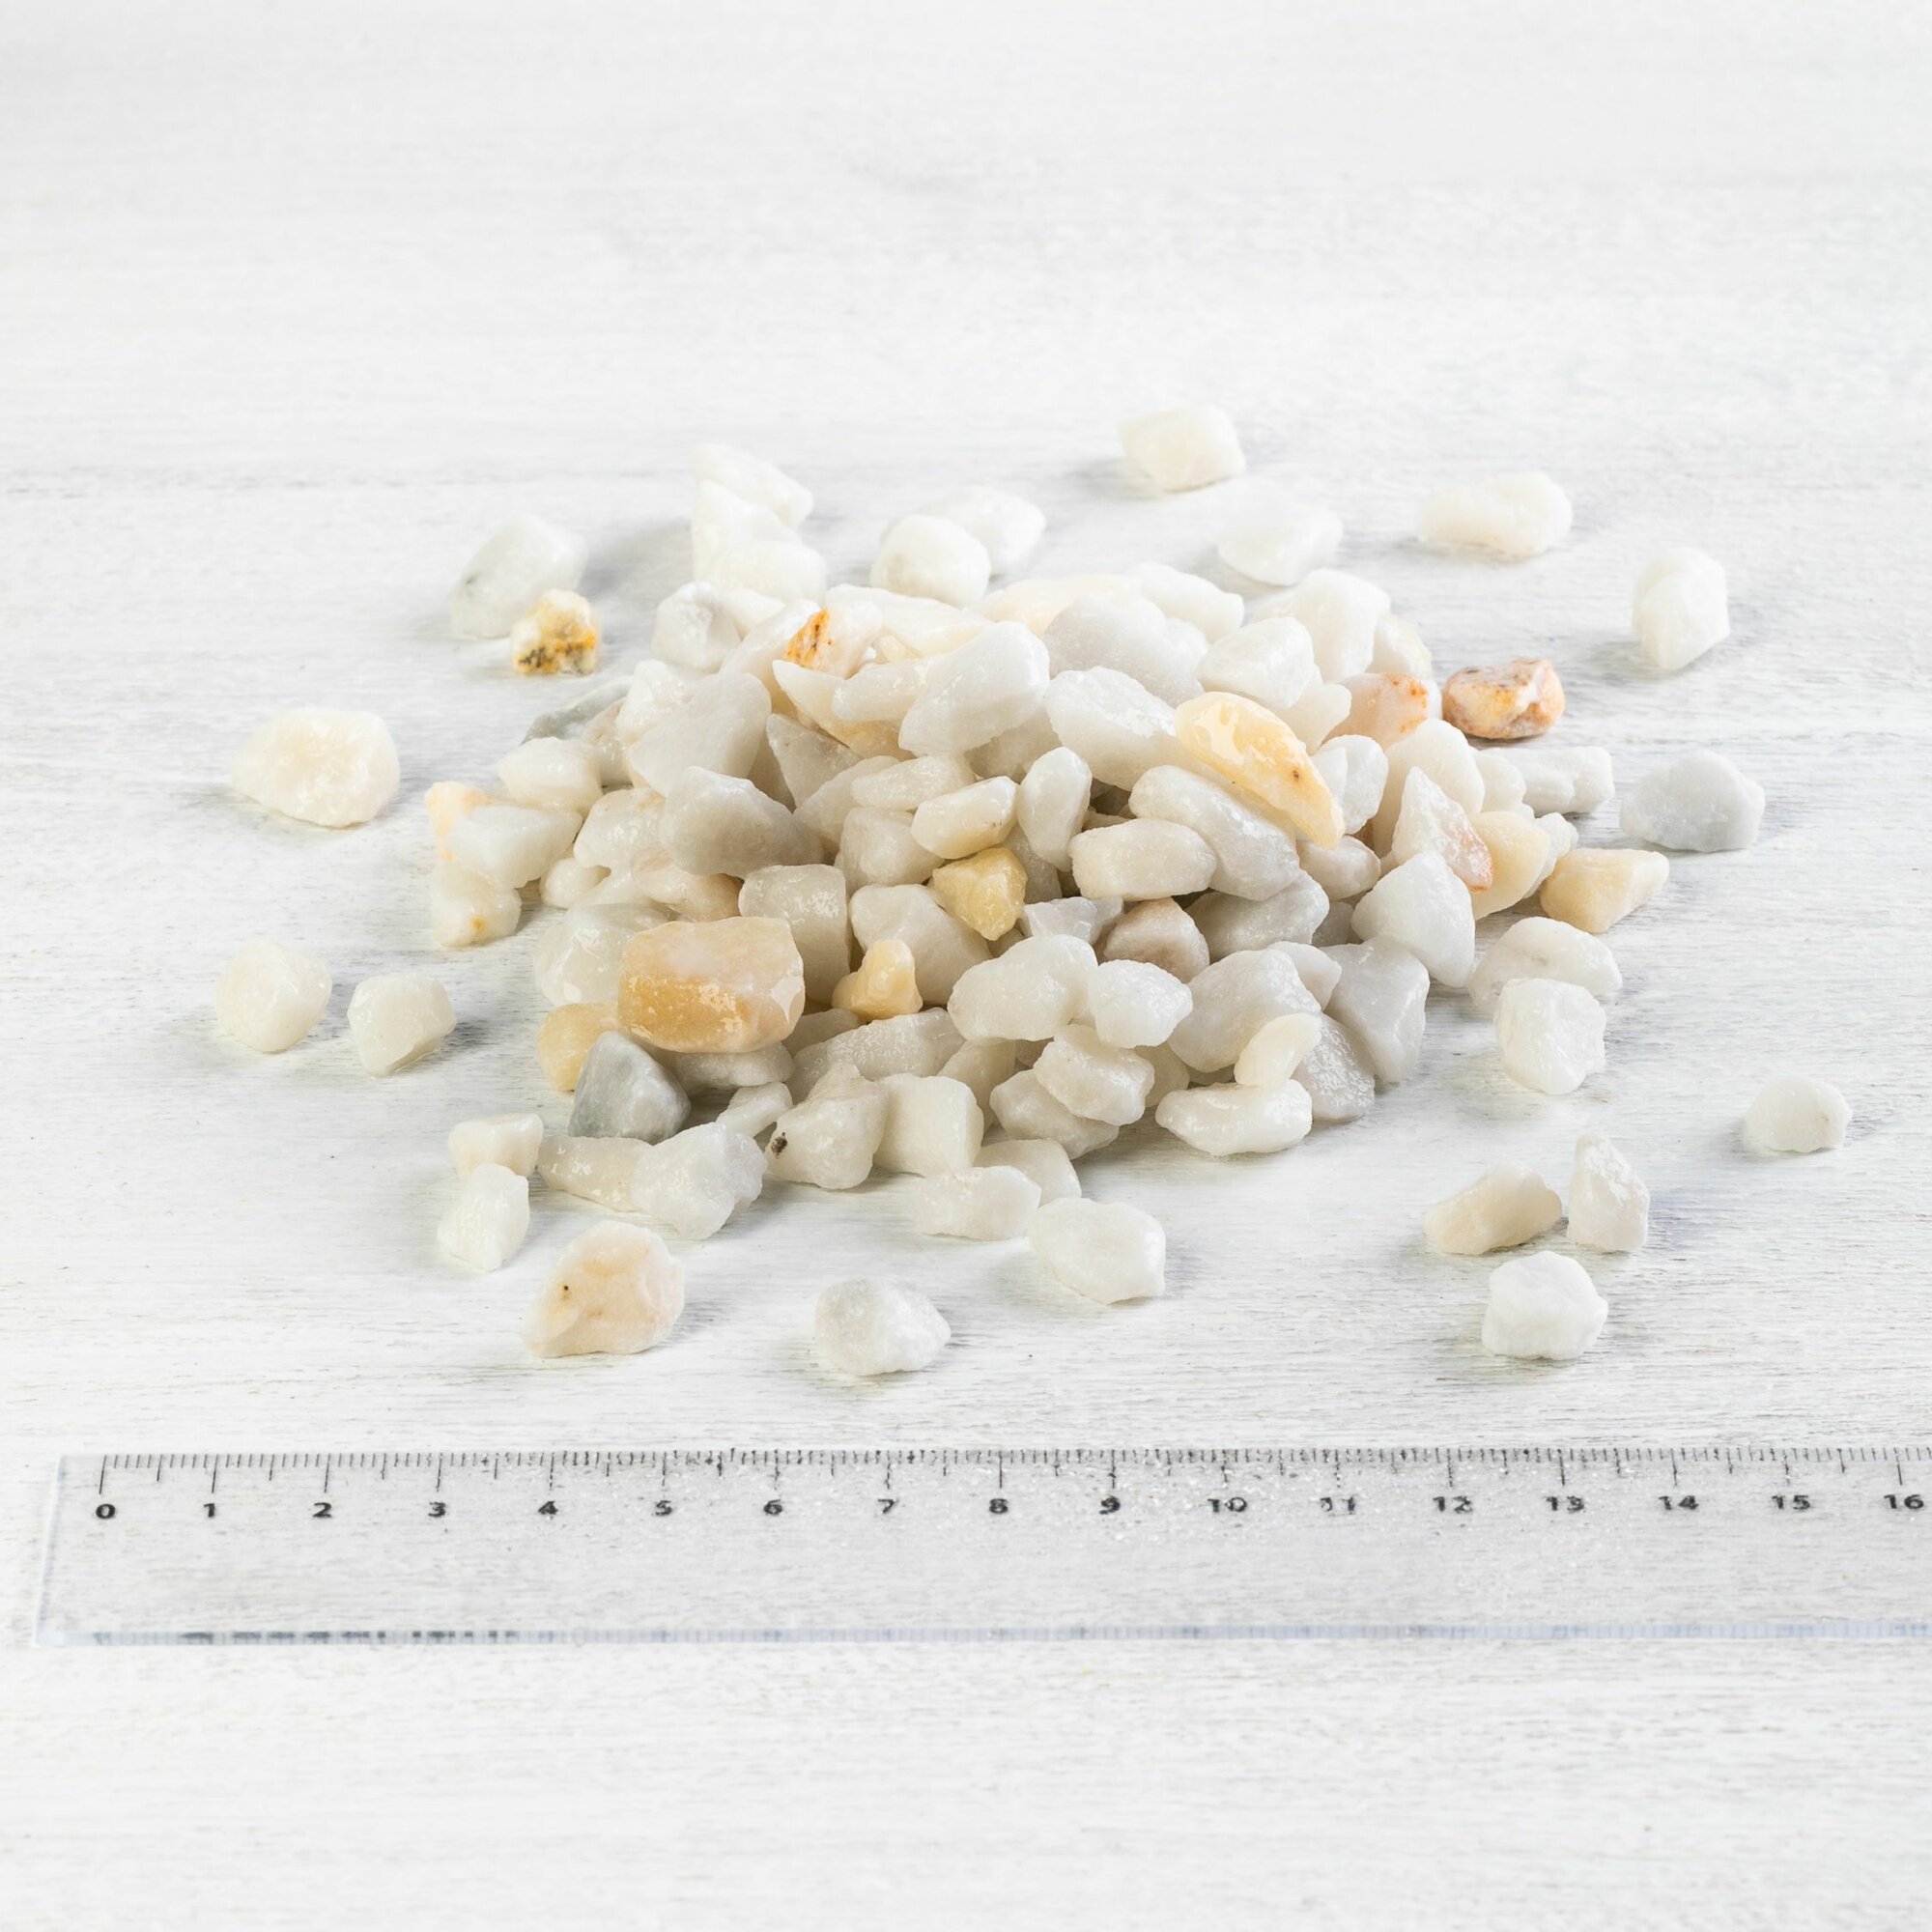 Мраморная крошка белая для ландшафта фракция 7-12 мм, 10 кг (316). Декоративный грунт, каменная крошка